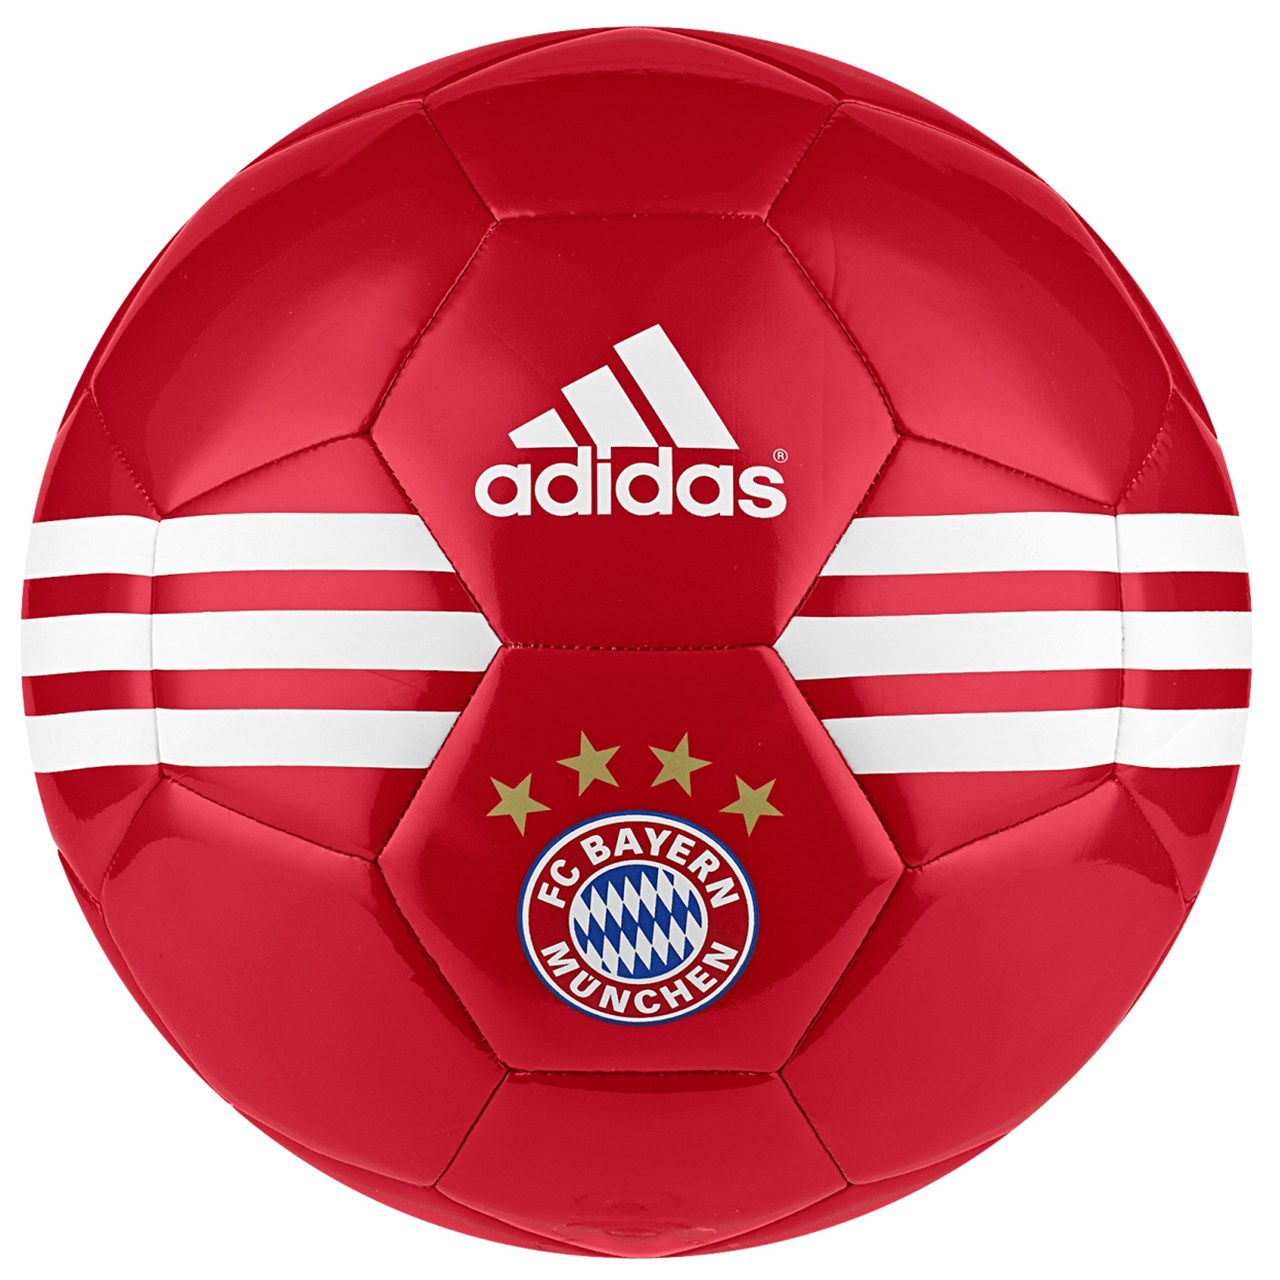 توپ فوتبال آدیداس مدل FC Bayern